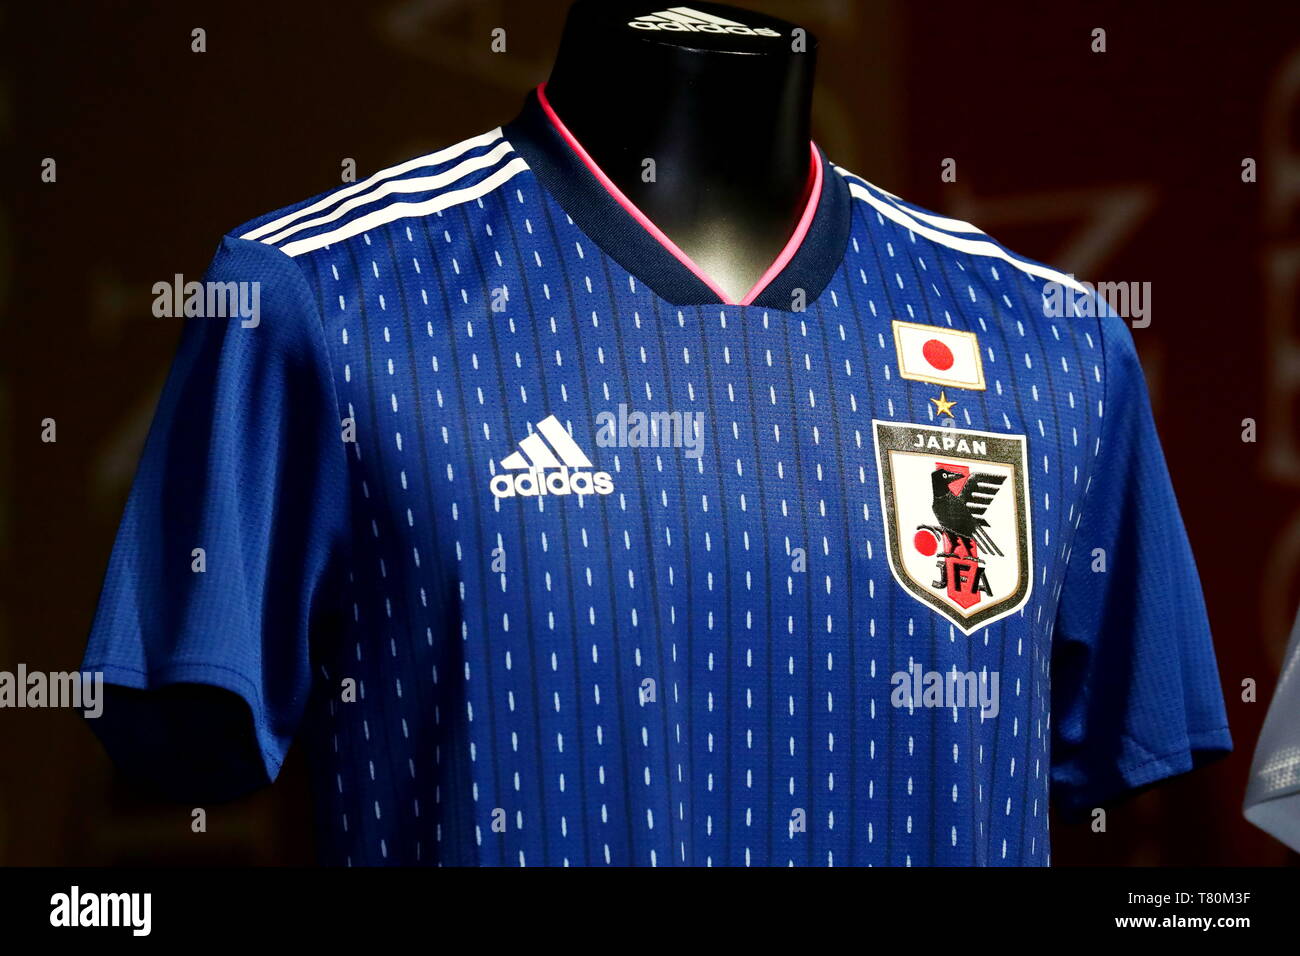 japan women's soccer jersey 2019